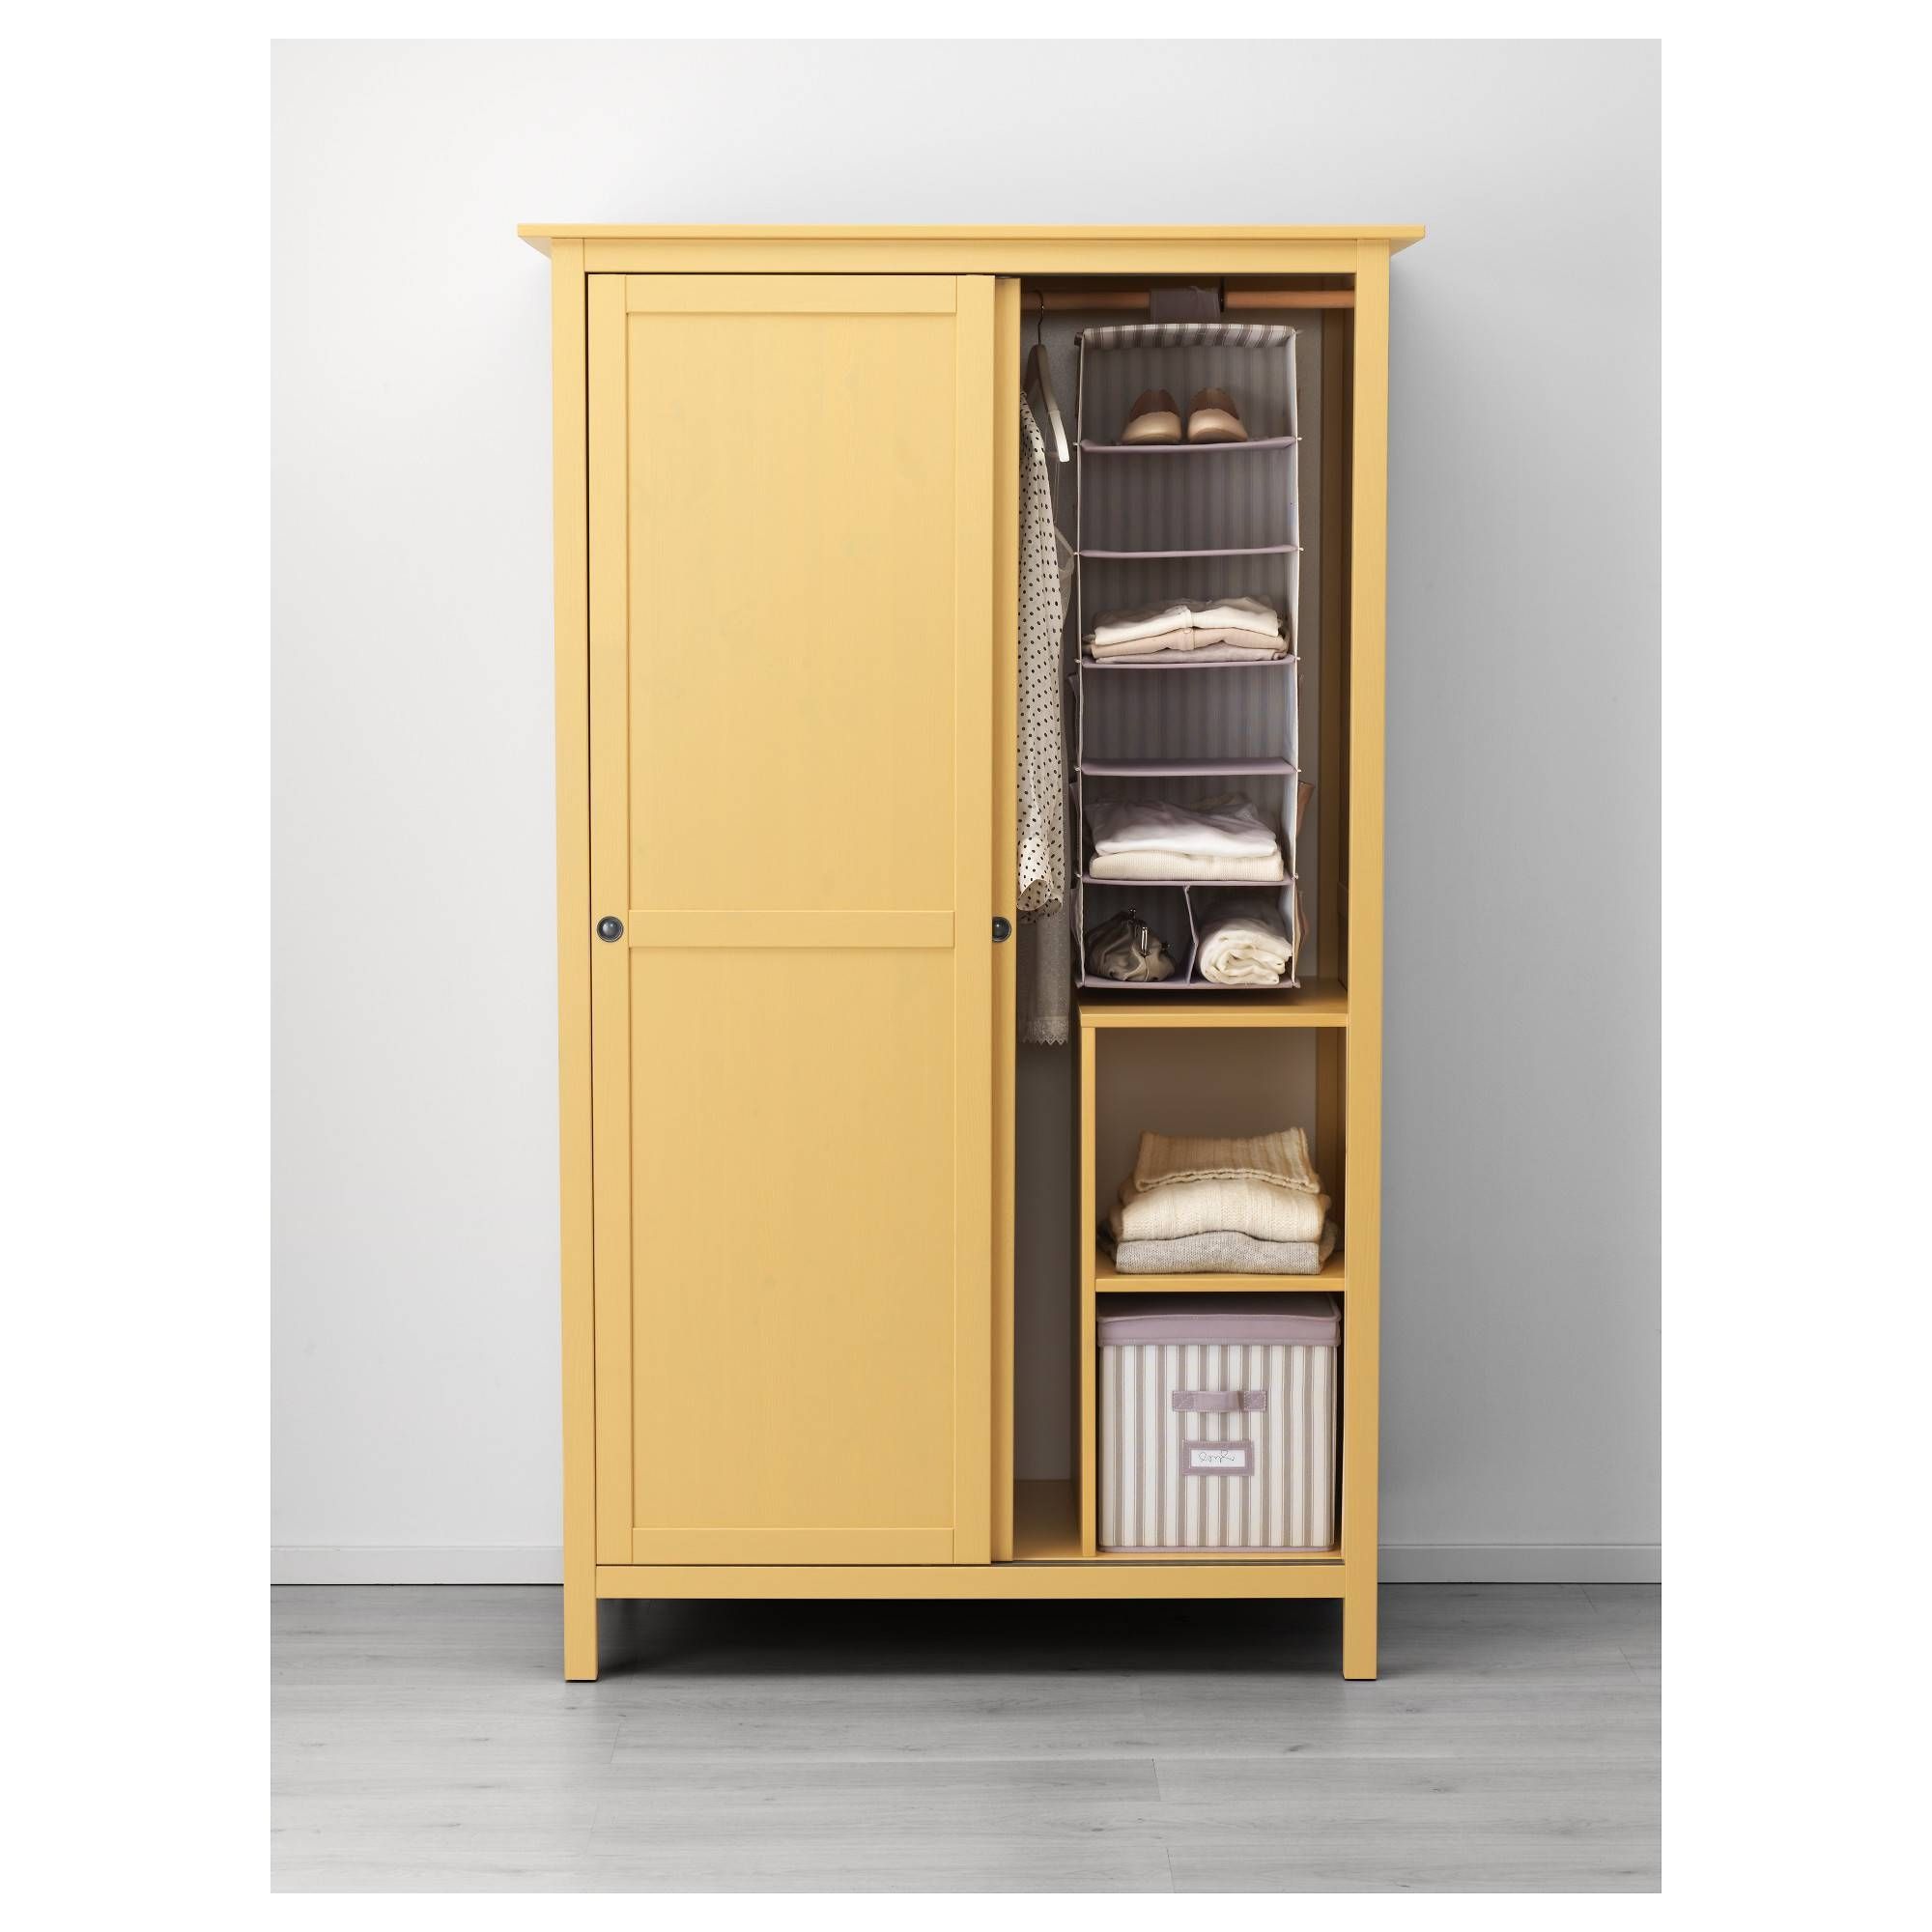 Hemnes Wardrobe With 2 Sliding Doors – Black Brown – Ikea For 2 Sliding Door Wardrobes (View 1 of 15)